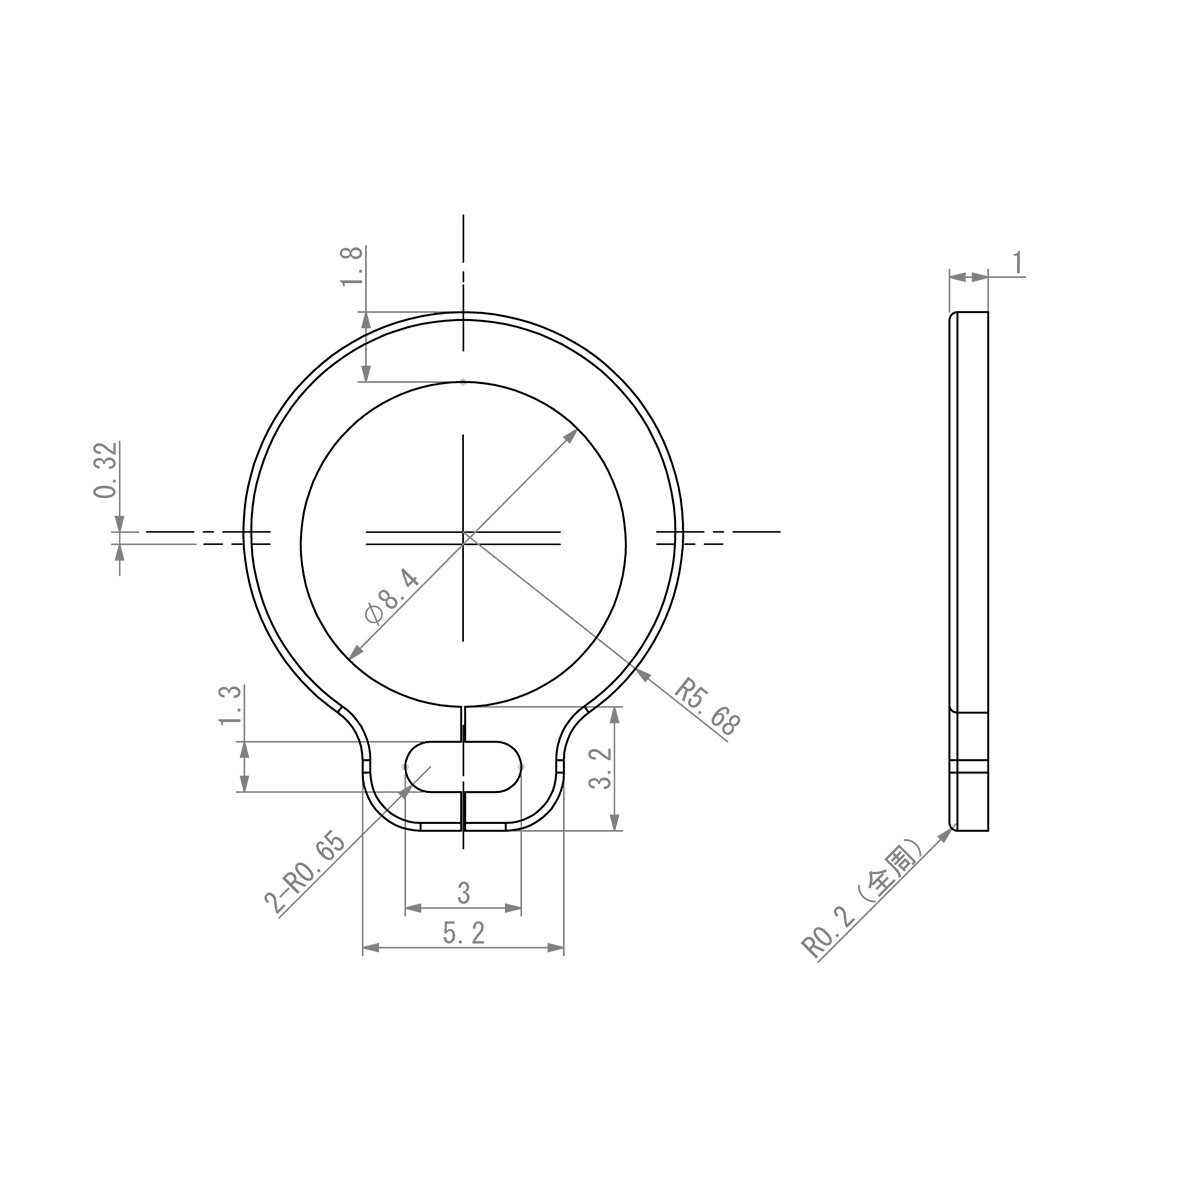 セイミツ工業製ジョイスティックレバー用 C形留め輪(Cリング) 呼び径9 (2個) 【SR-C-P9】